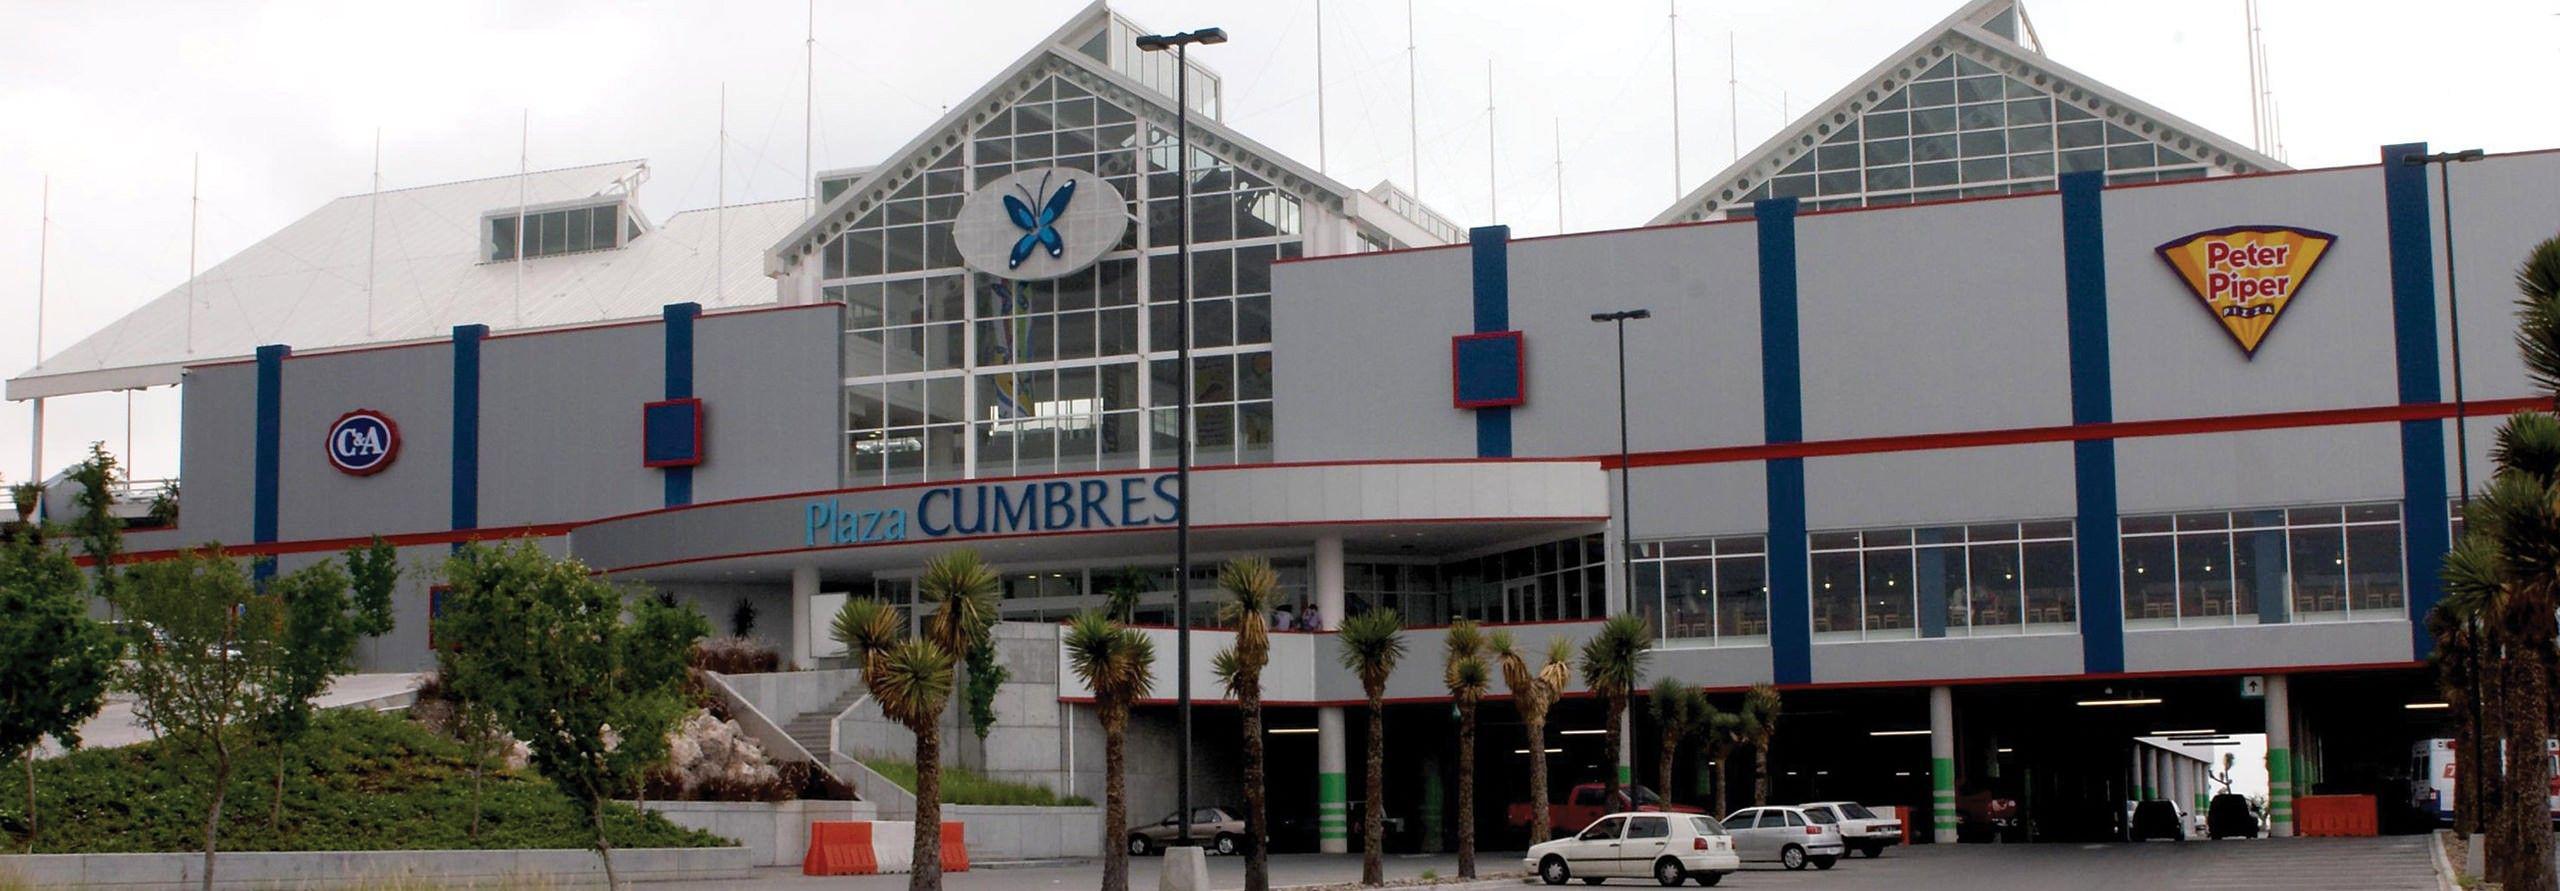 Plaza Cumbres